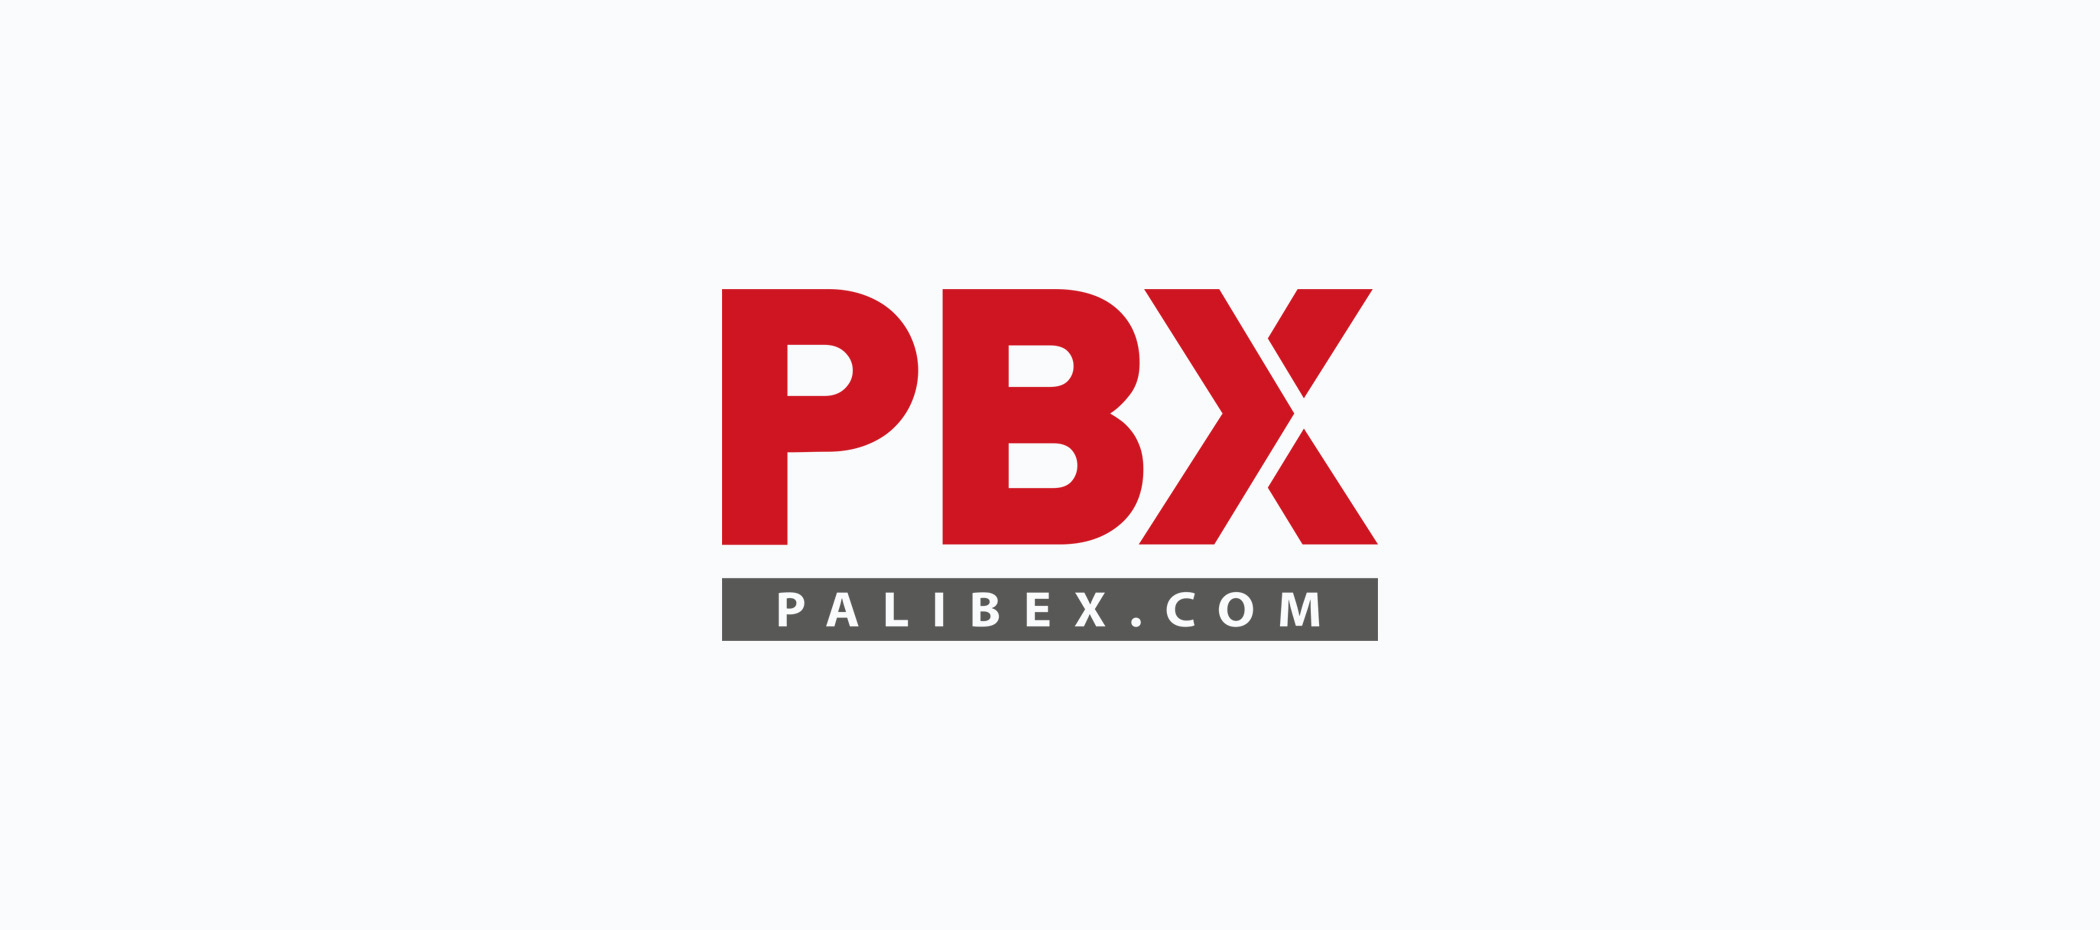 diseño logotipo - Beusual - diseño grafico santander - Palibex - PBX